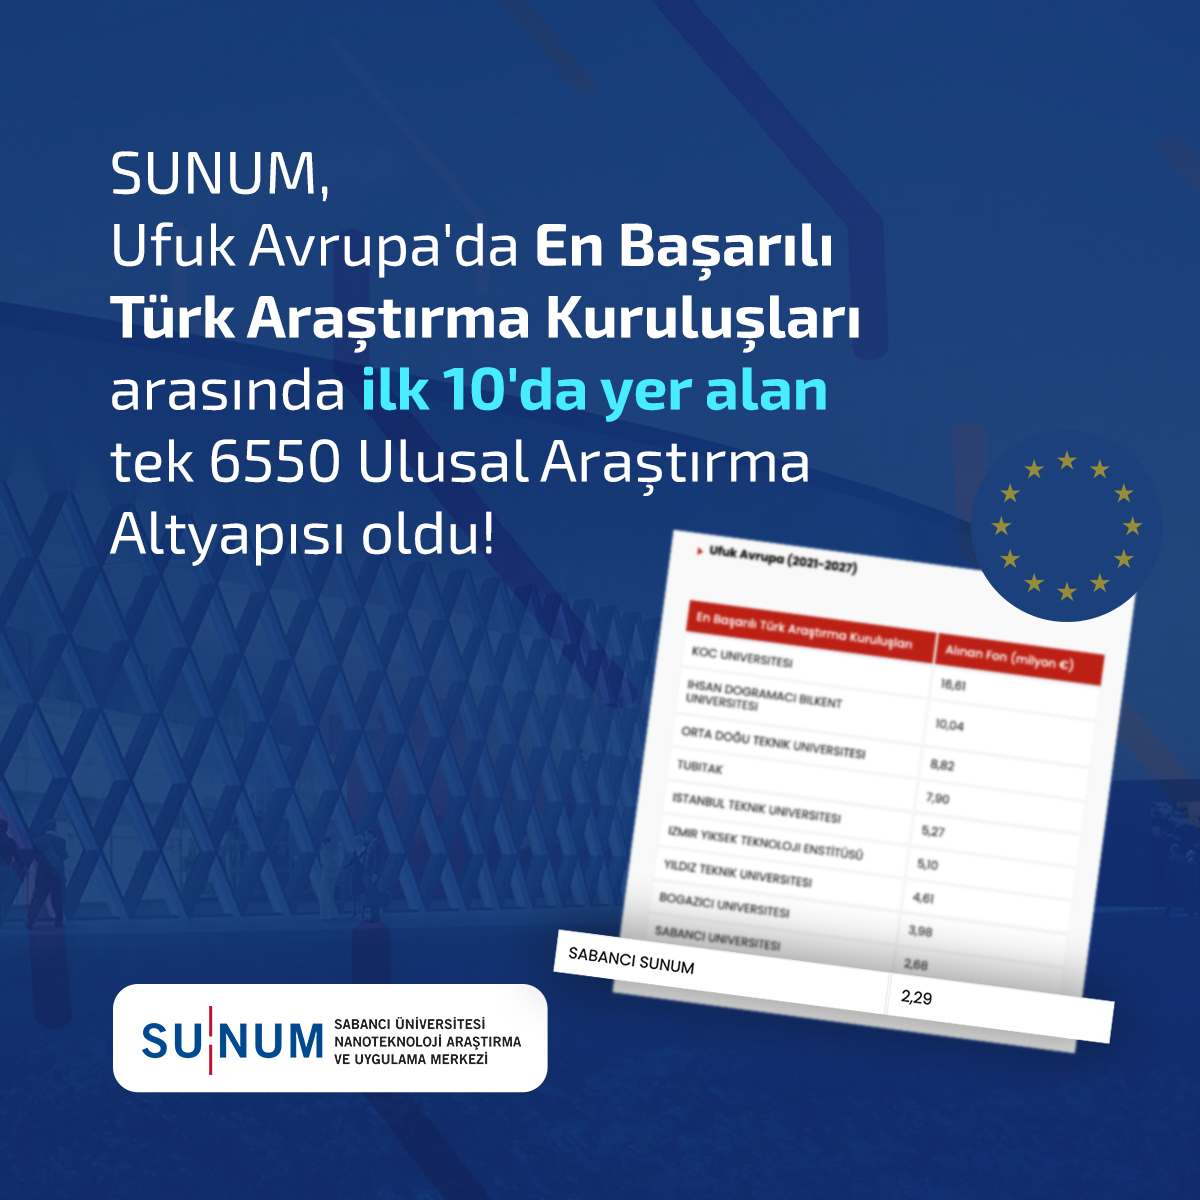 SUNUM, Ufuk Avrupa'da En Başarılı Türk Araştırma Kuruluşları arasında ilk 10'da yer alan tek 6550 Ulusal Araştırma Altyapısı oldu!